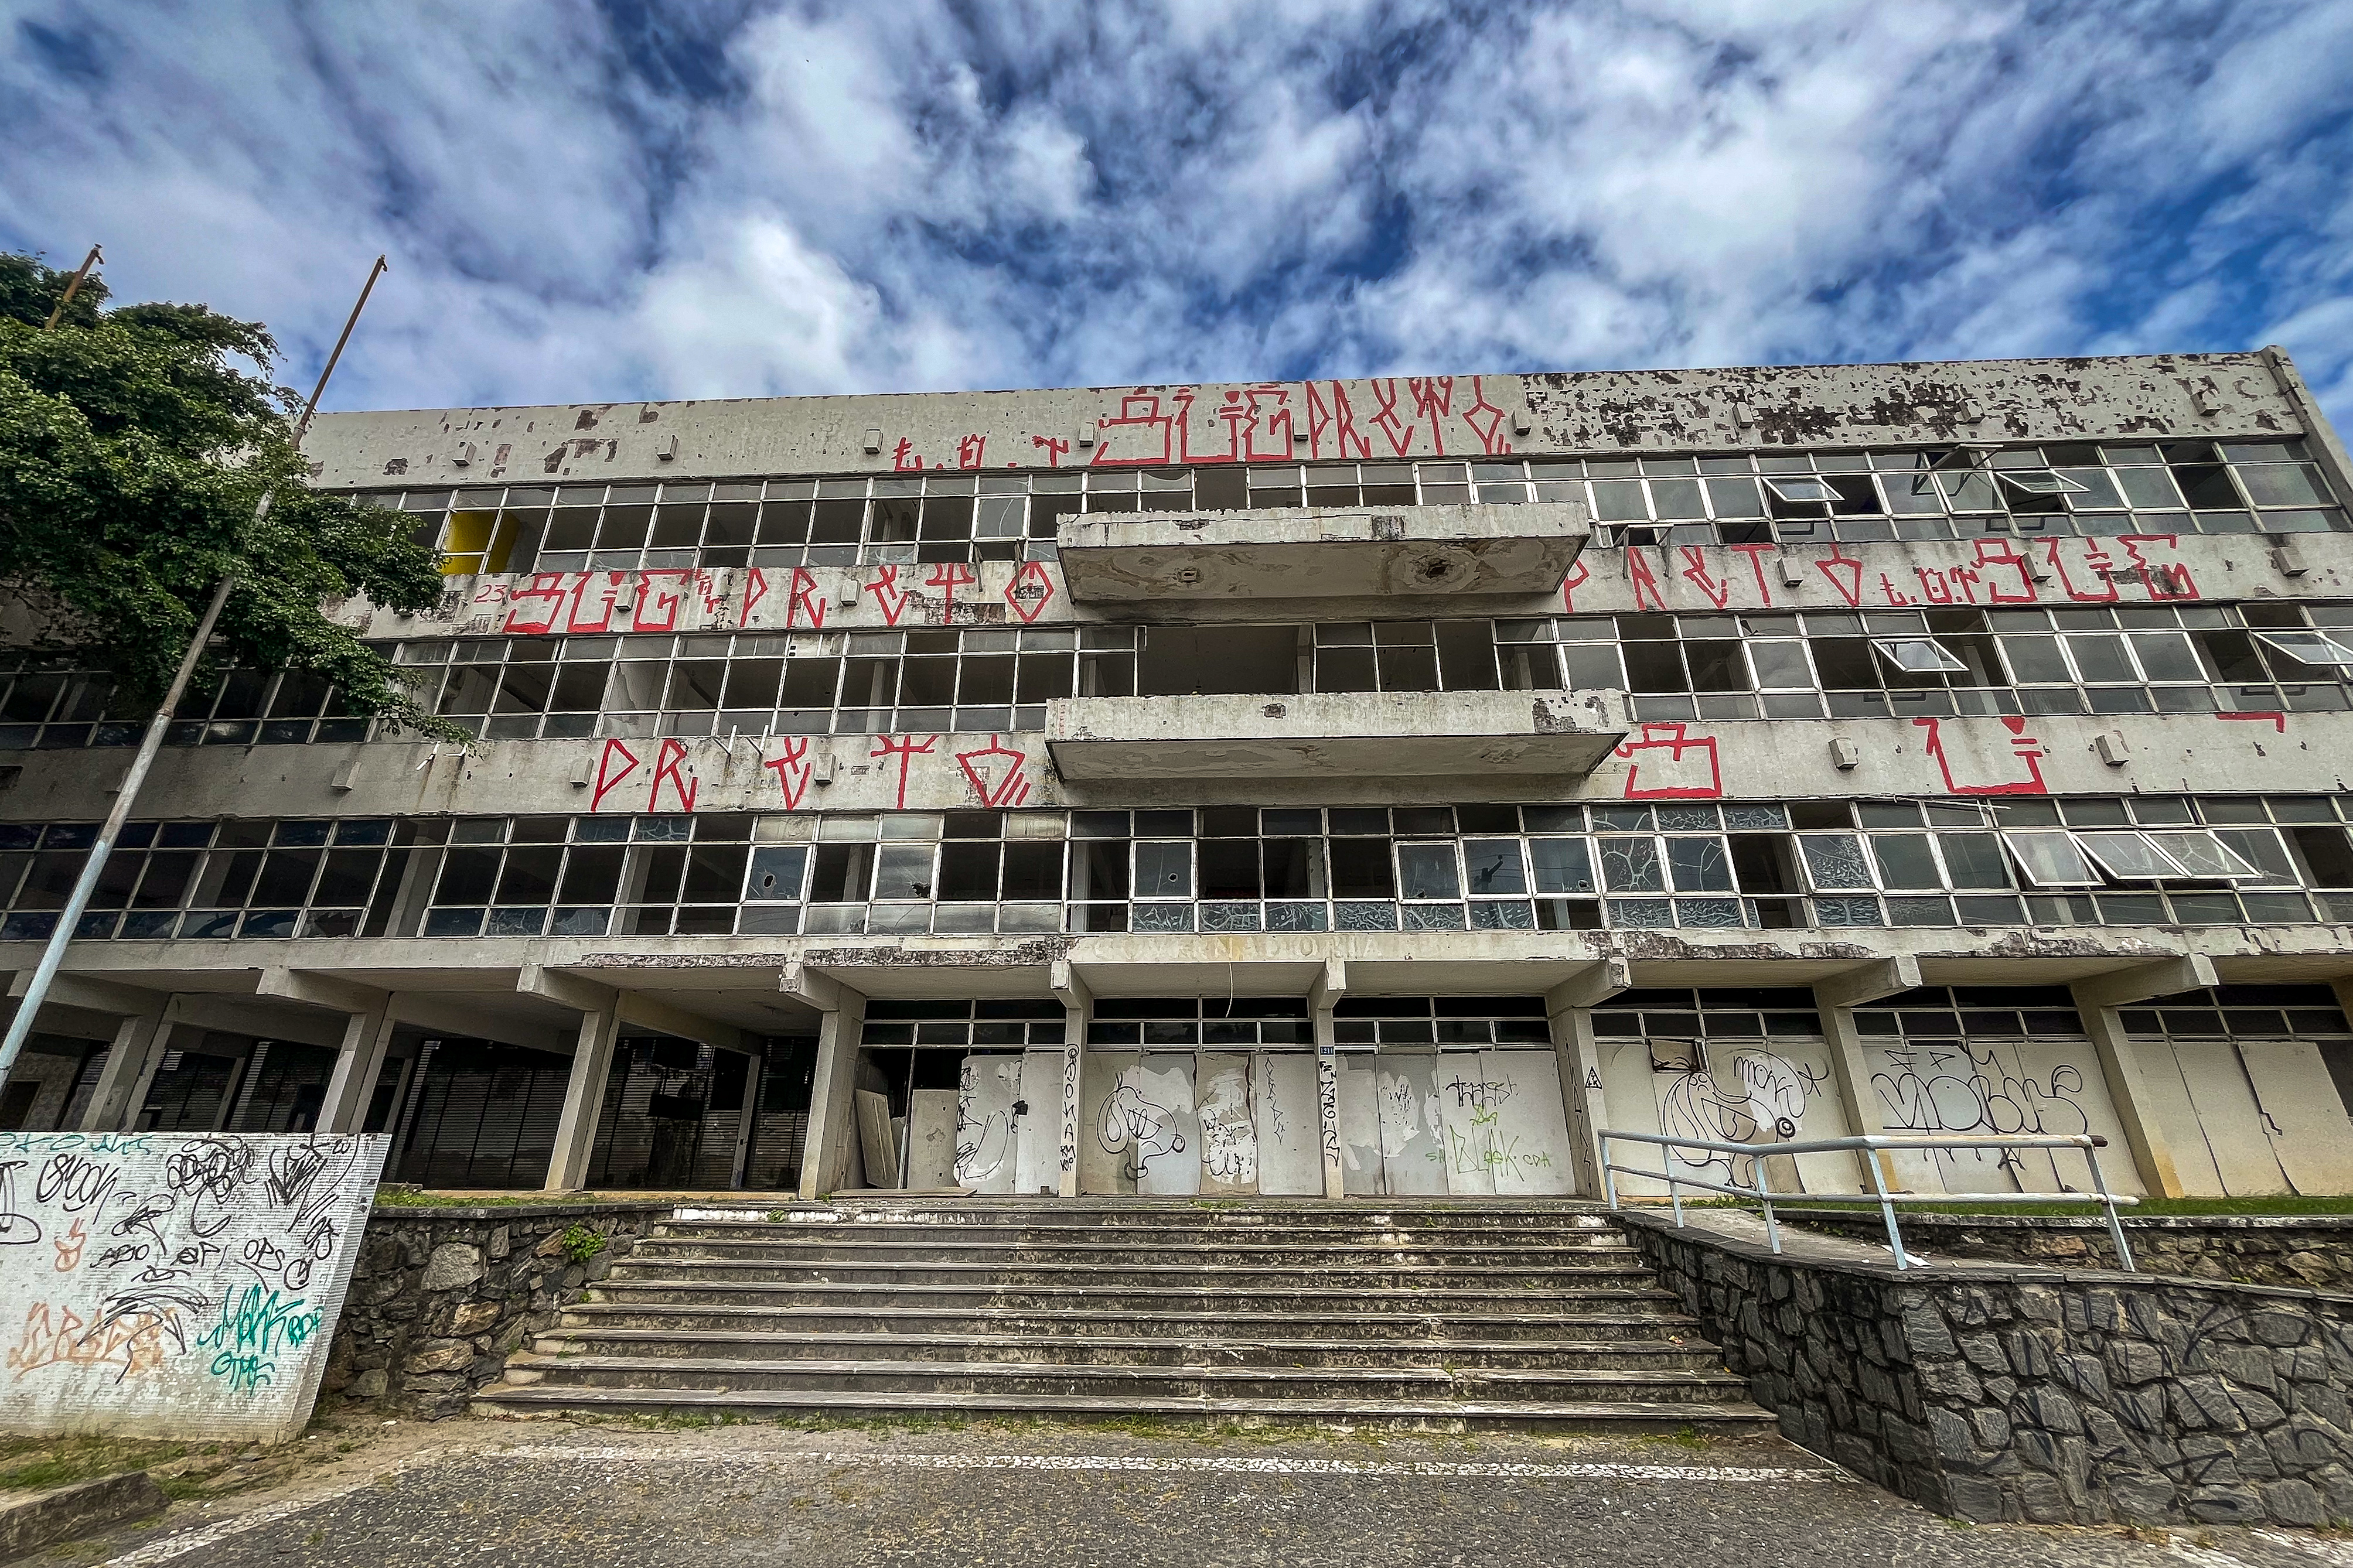 O Palácio Frei Caneca, antiga sede da vice-governadoria do estado, foi a edificação onde muitos documentos importantes para os rumos de Pernambuco foram assinados (Rafael Vieira/DP)